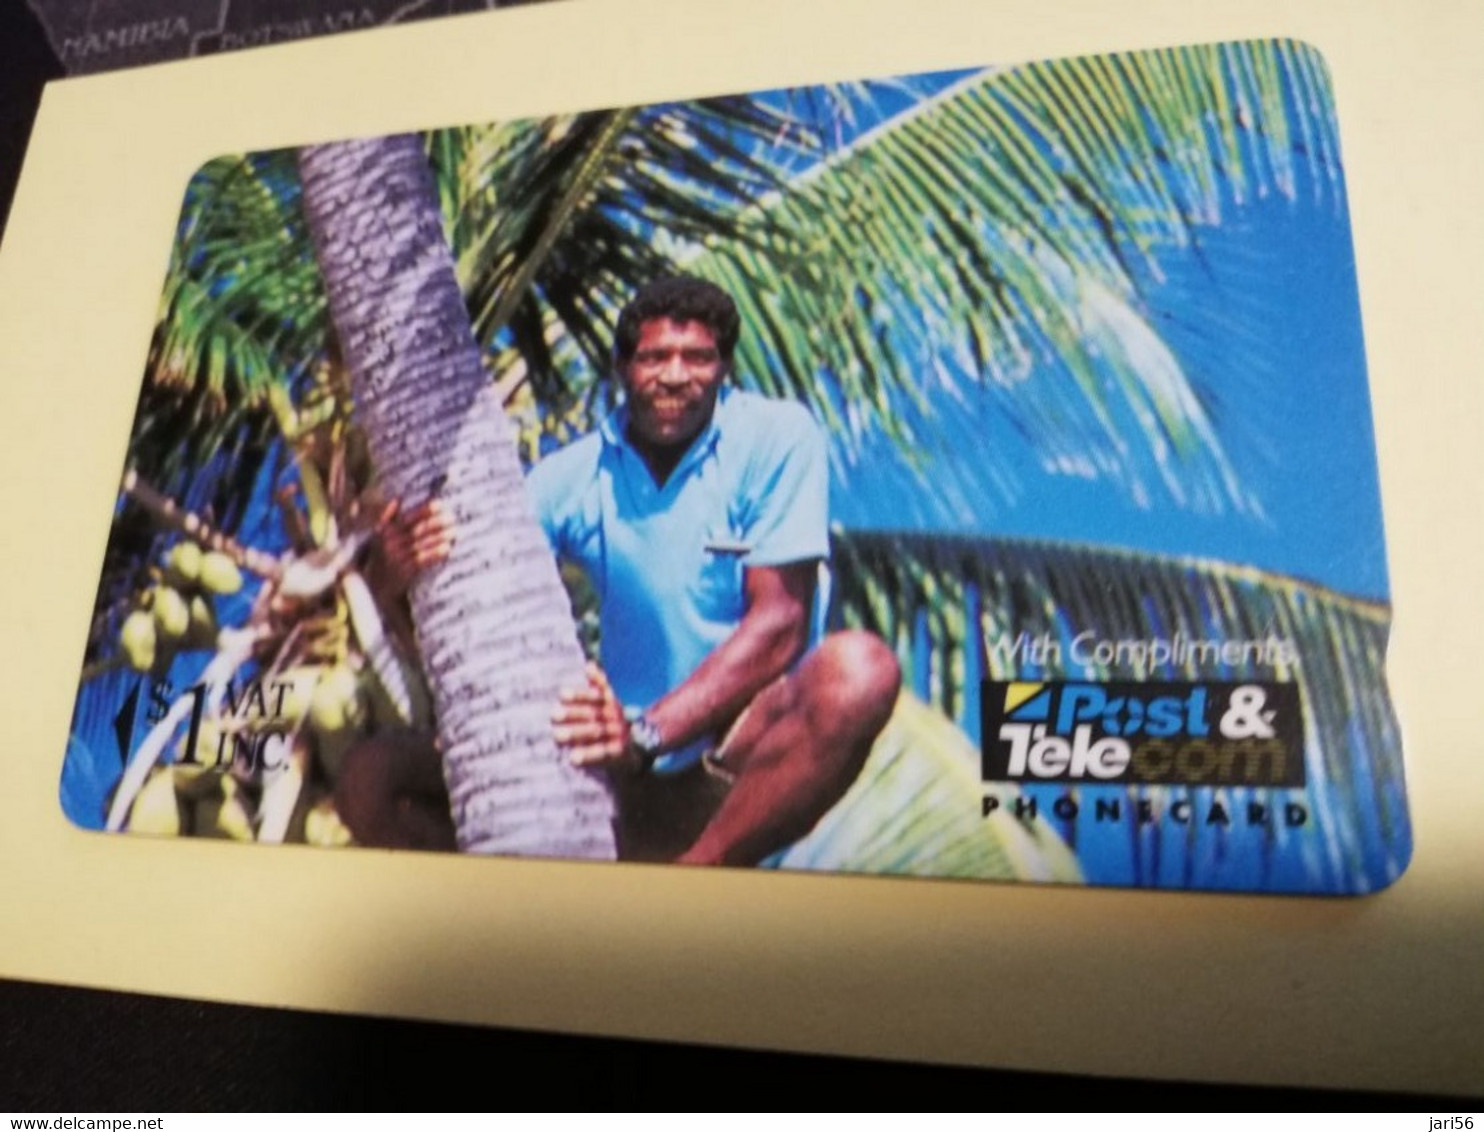 FIDJI  $1 COMPLIMENTARY  01FJA   MINT  CARD ** 3471** - Fidji